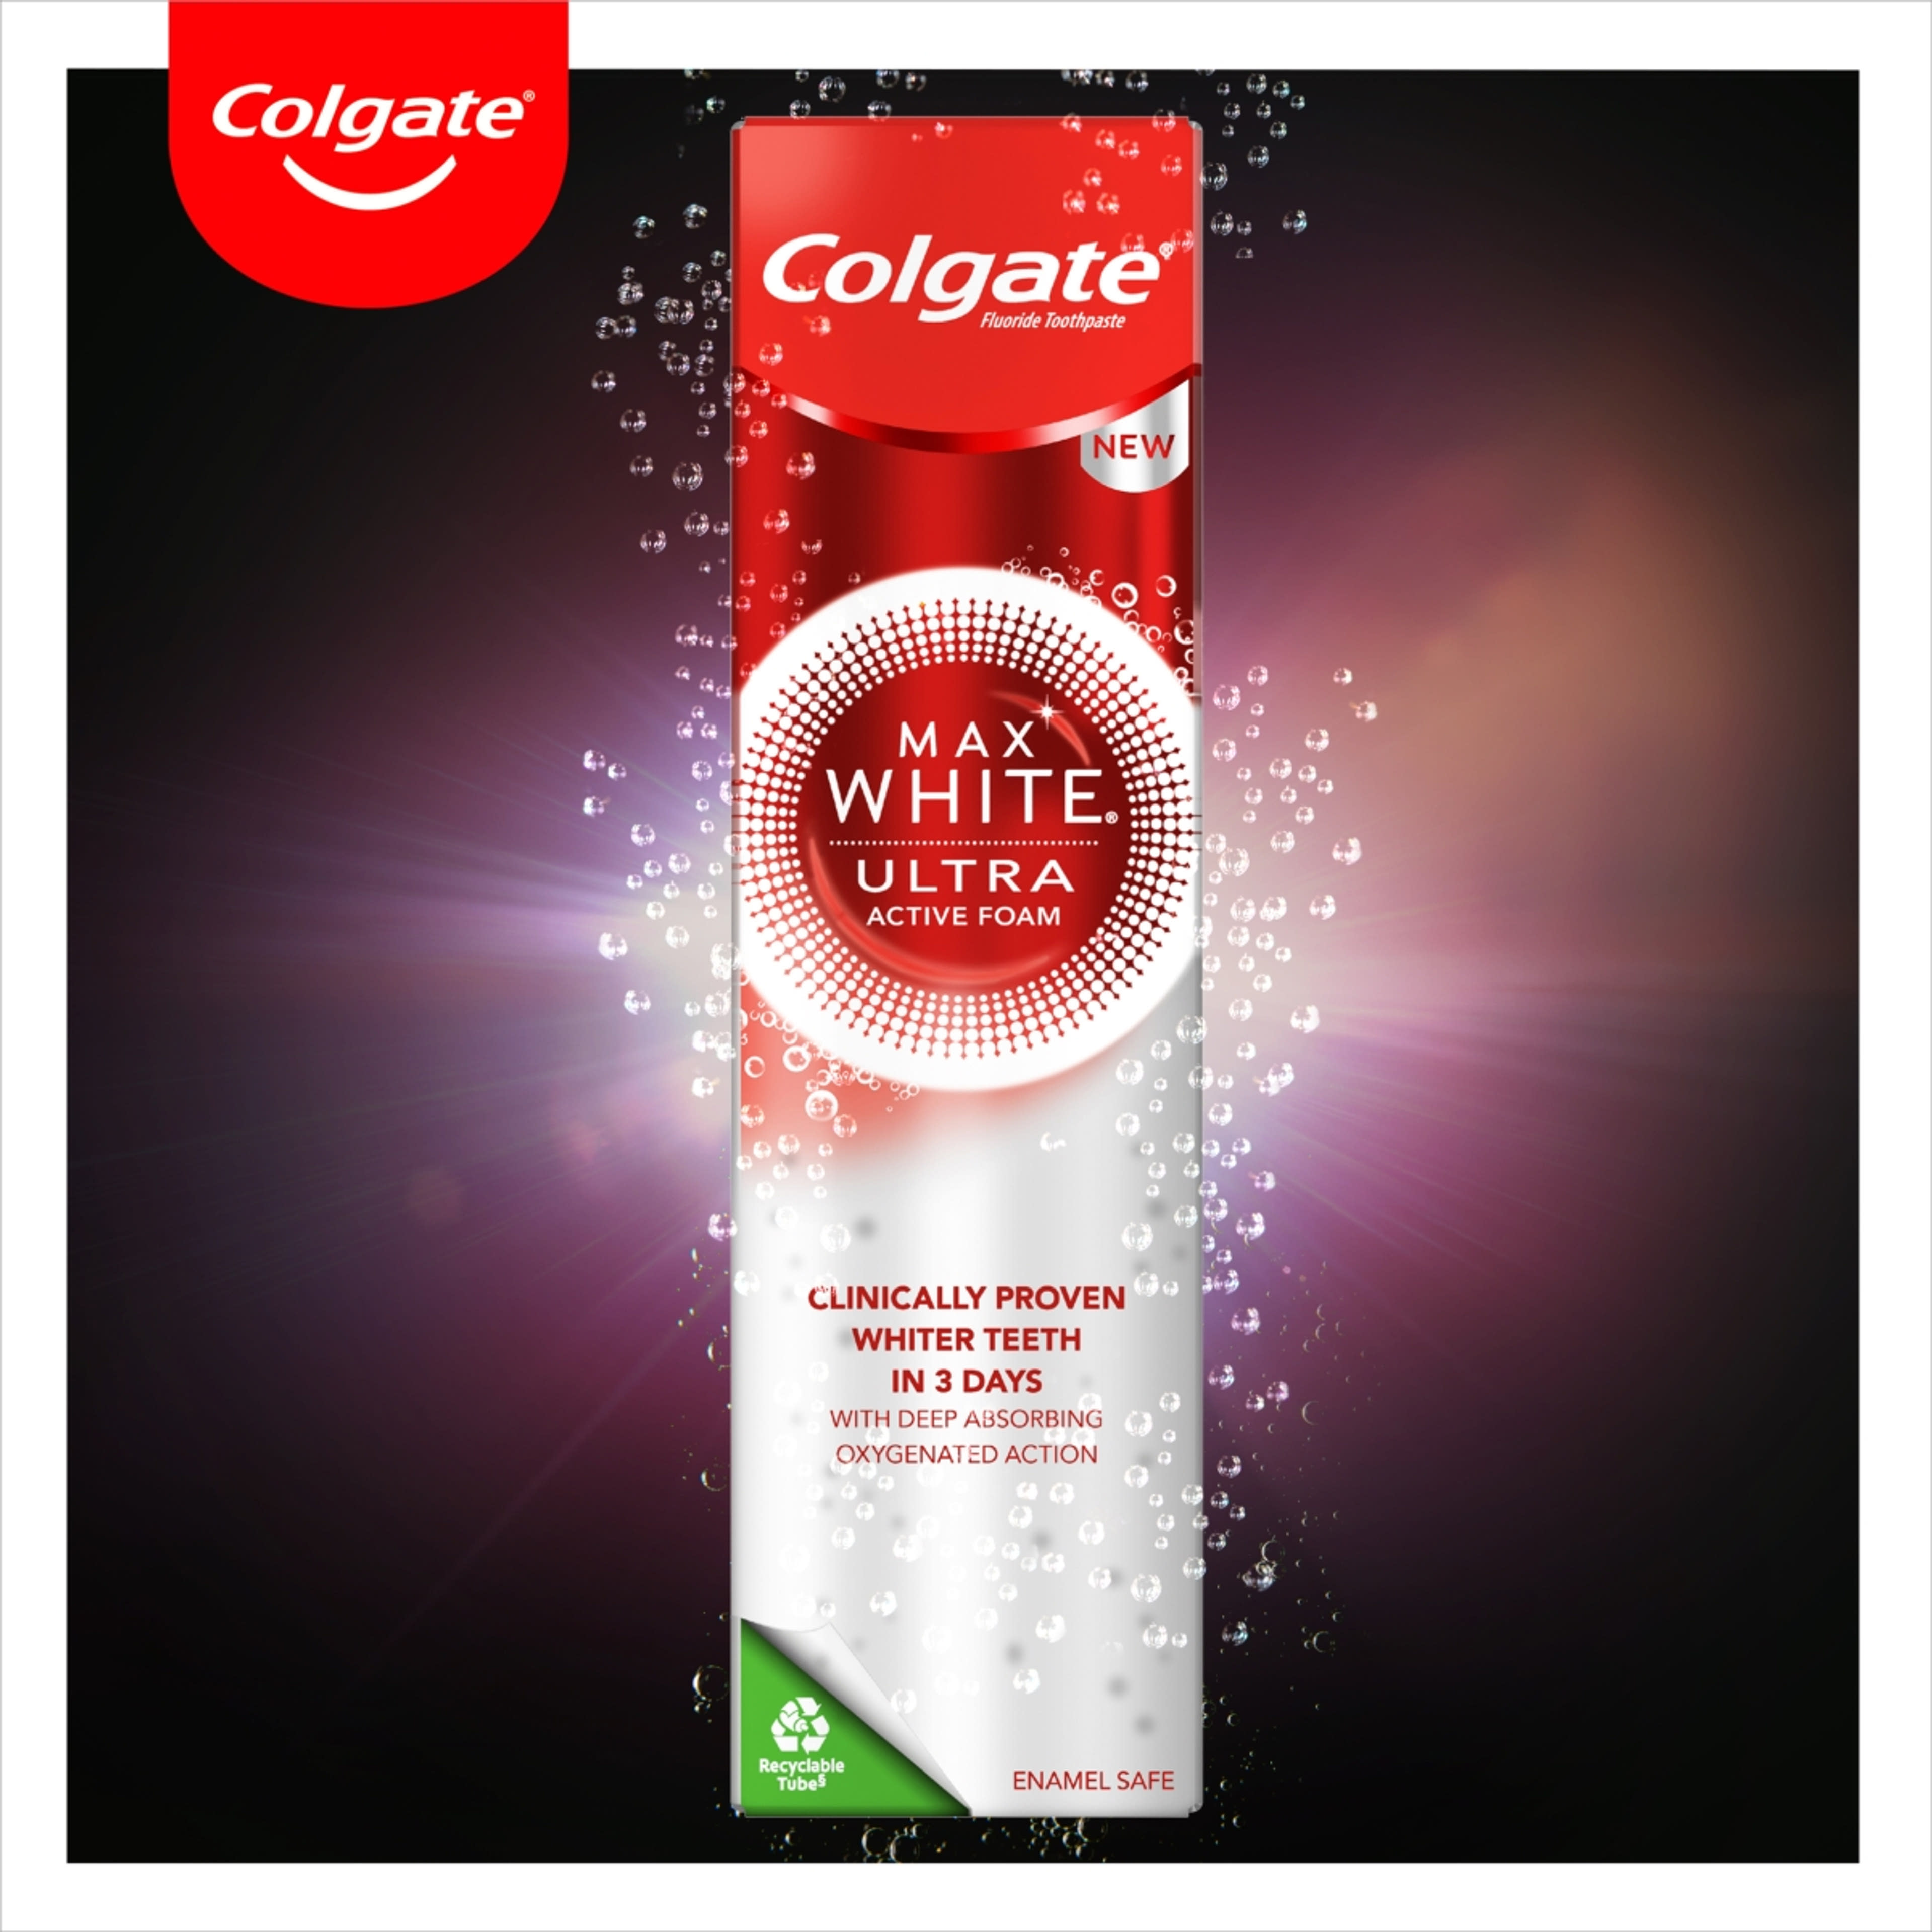 Colgate Max White Ultra Active Foam Whitening fogkrém - 50ml-7